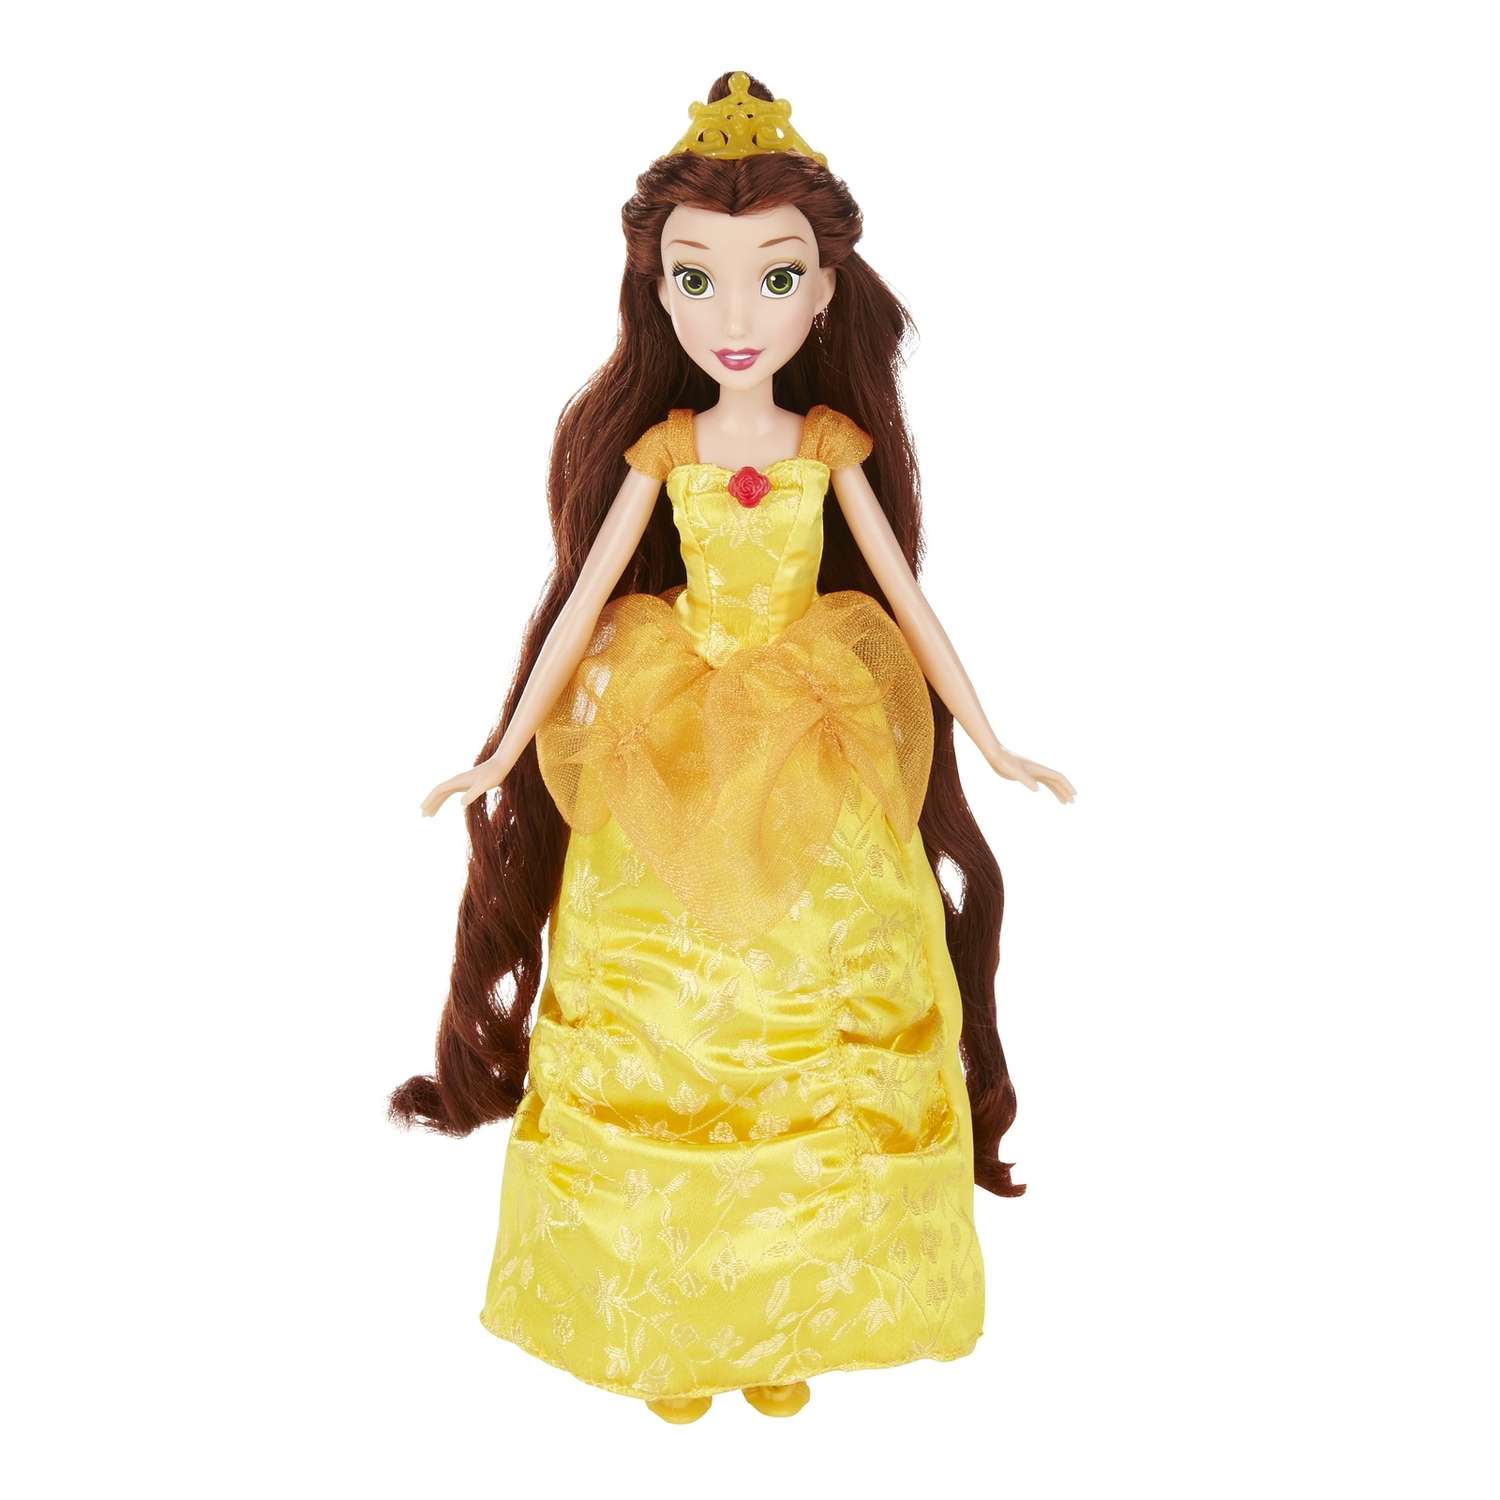 Базовая кукла Princess Принцесса в ассортименте B5292EU4 - фото 1